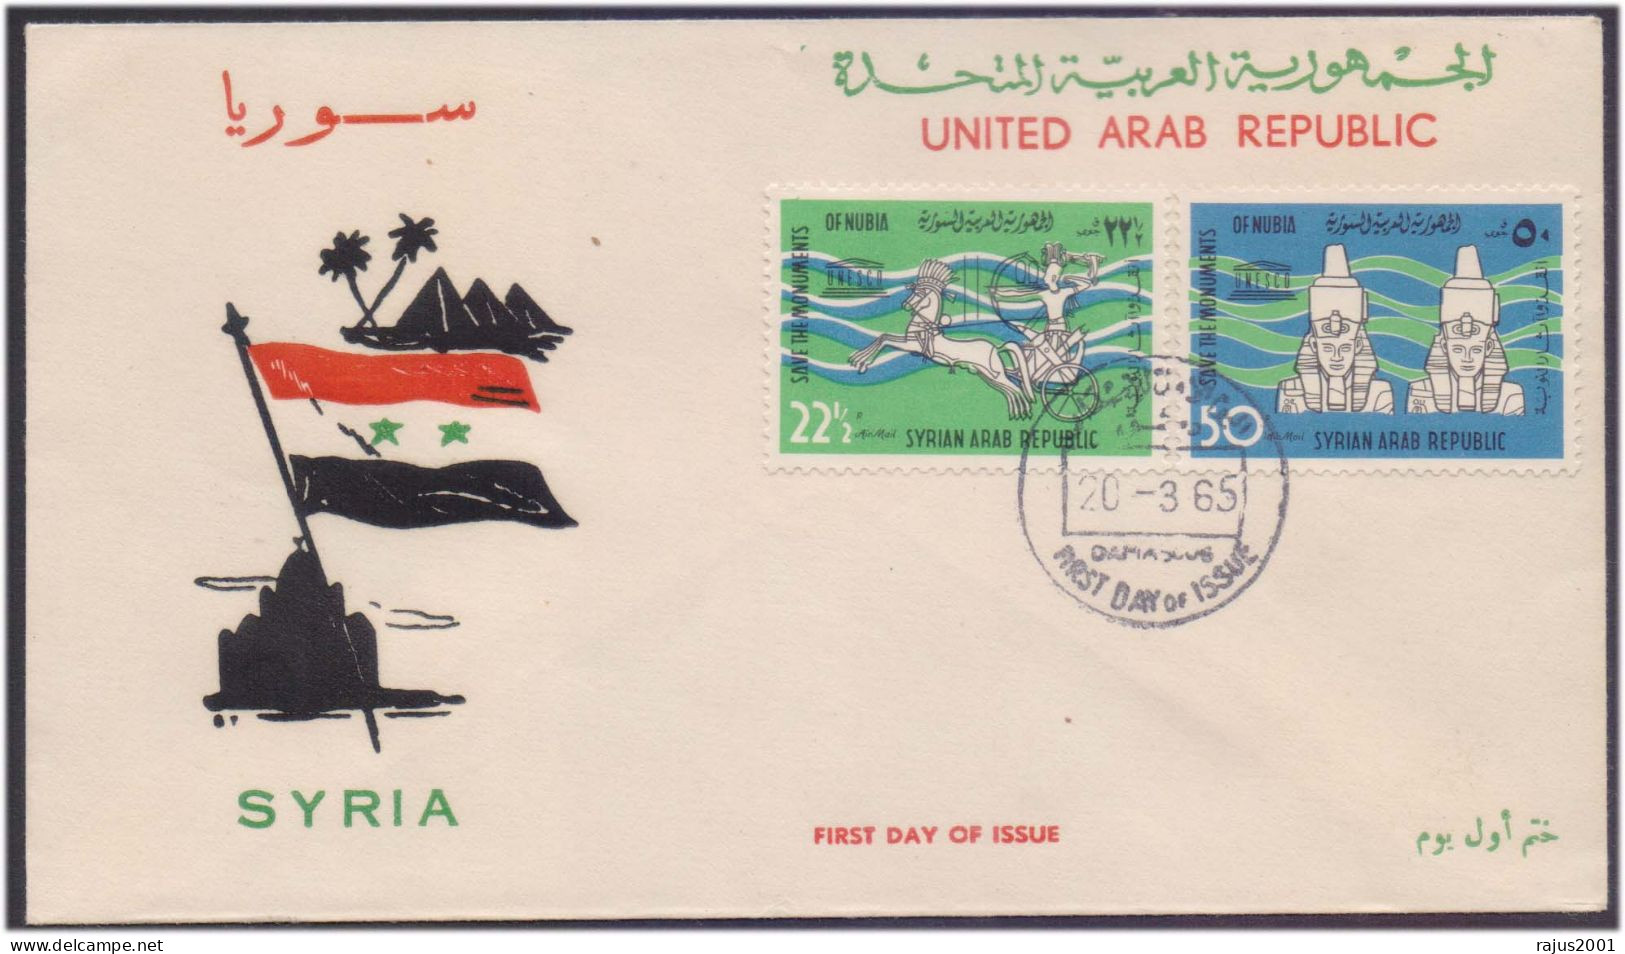 Save Monuments Of Nubia, Abu Simbel Temple, Egyptology Pharaon, Pharaoh, Mythology, UNESCO, Syria FDC 1965 - Egyptologie